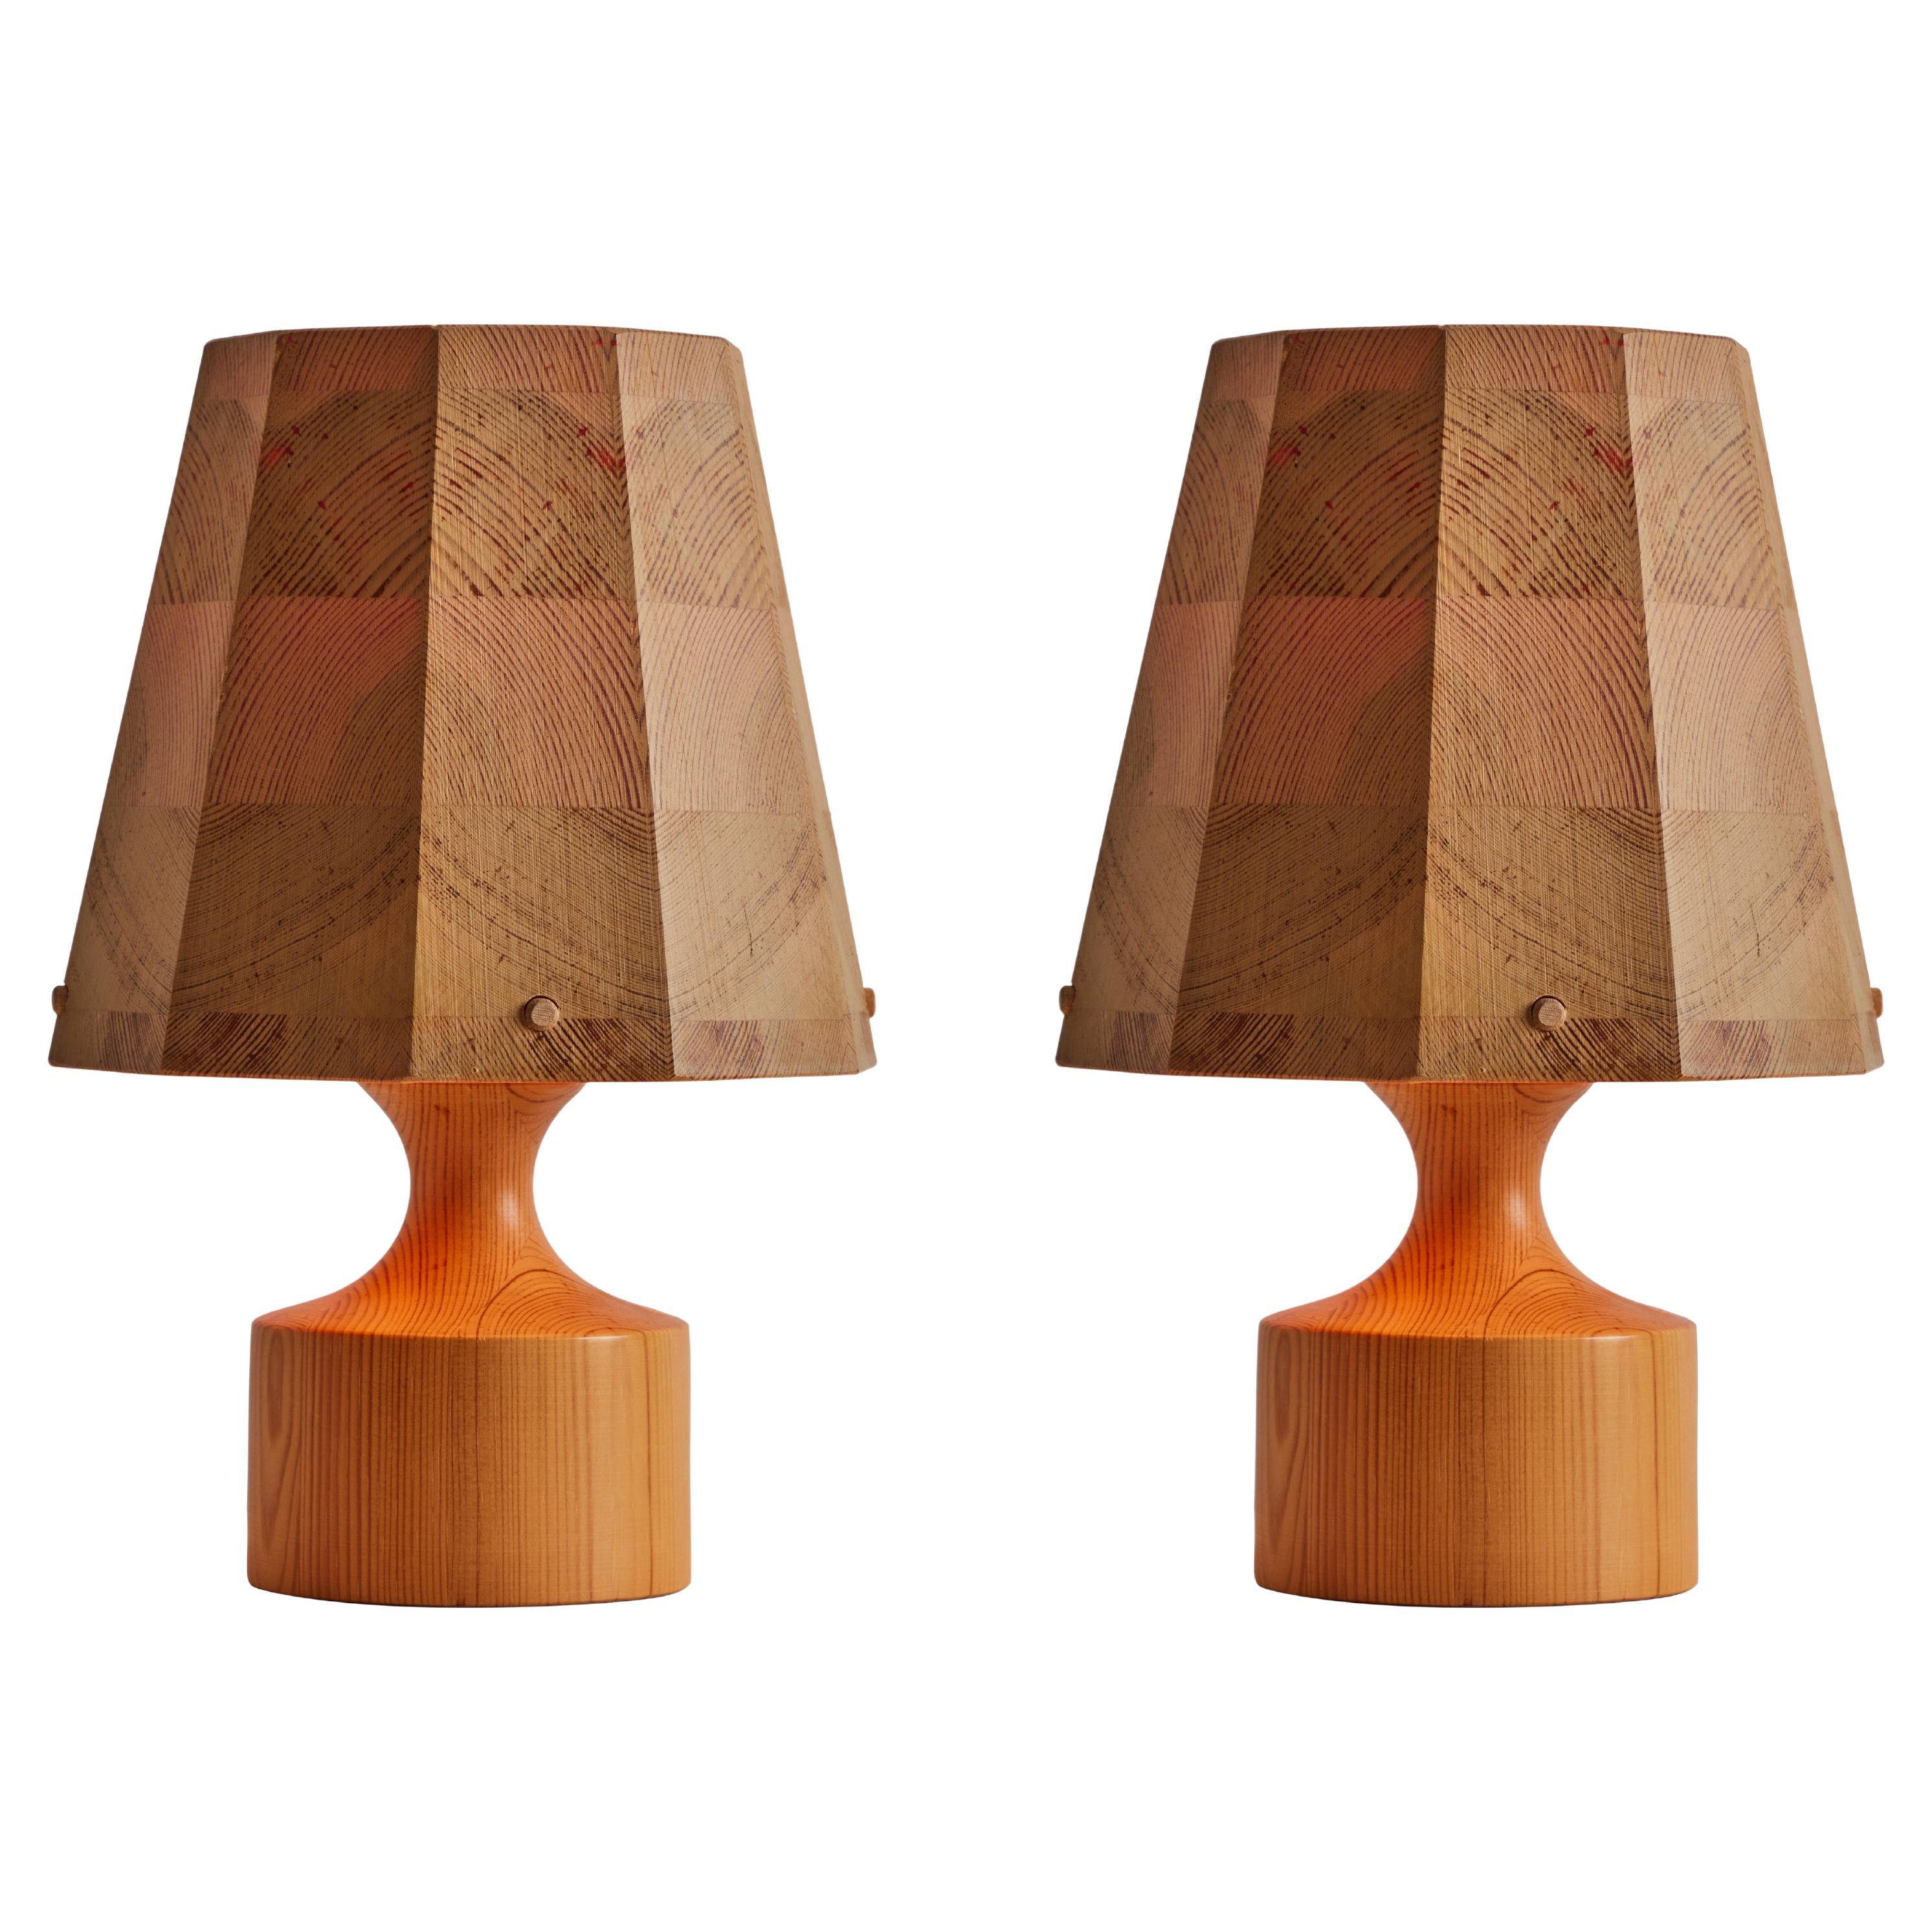 Paar Tischlampen aus Holz aus den 1960er Jahren, Hans-Agne Jakobsson für AB Ellysett zugeschrieben